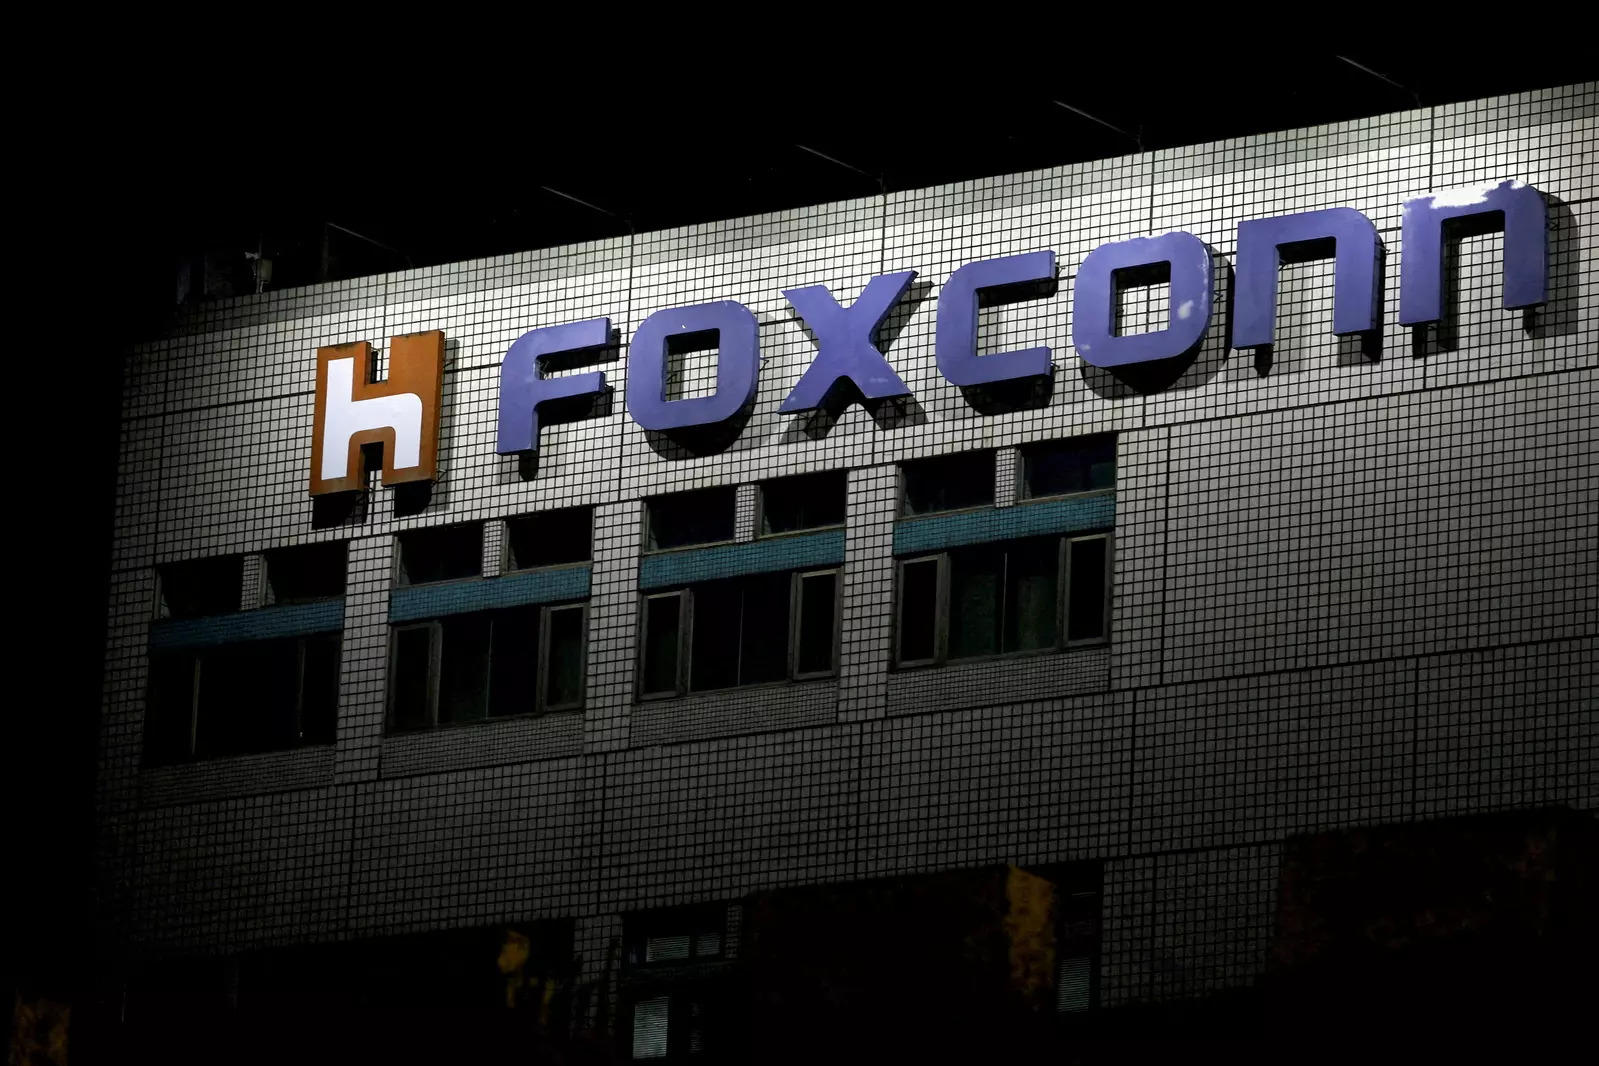 Foxconn: Govt clears Rs 357-cr sop for Foxconn India unit under PLI scheme, Telecom News, ET Telecom